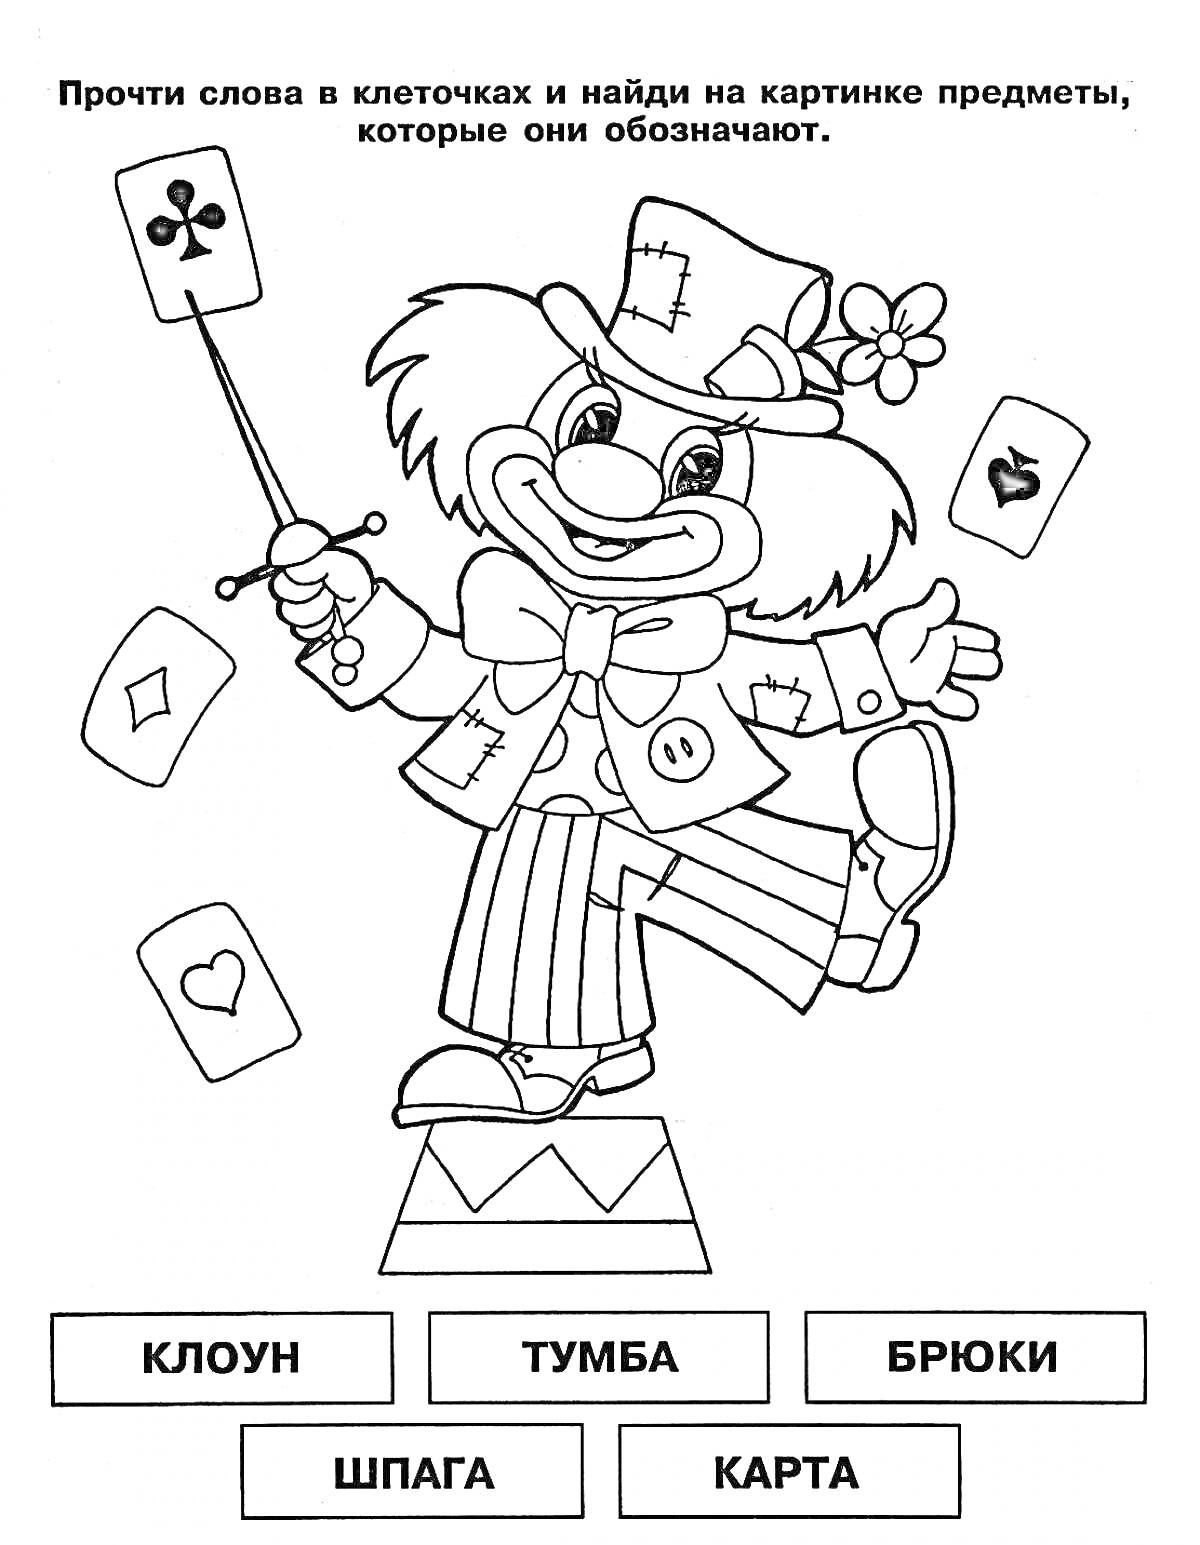 Клоун с тумбой, брюк, шпагой и картами